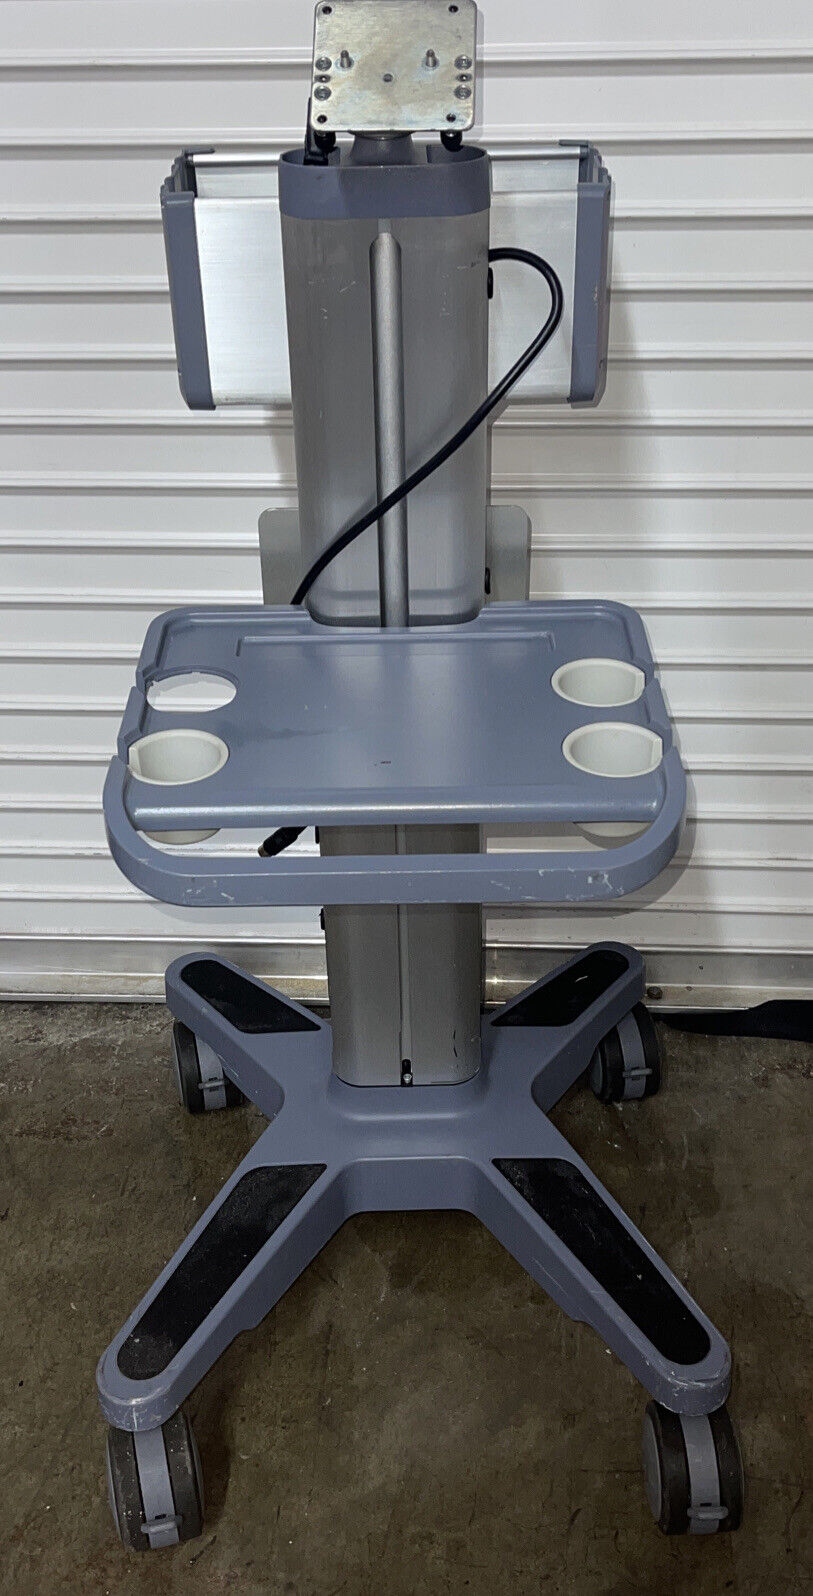 Sonosite V-Universal Stand / Cart For Sonosite Nanomaxx~15120 Ref P12738-20